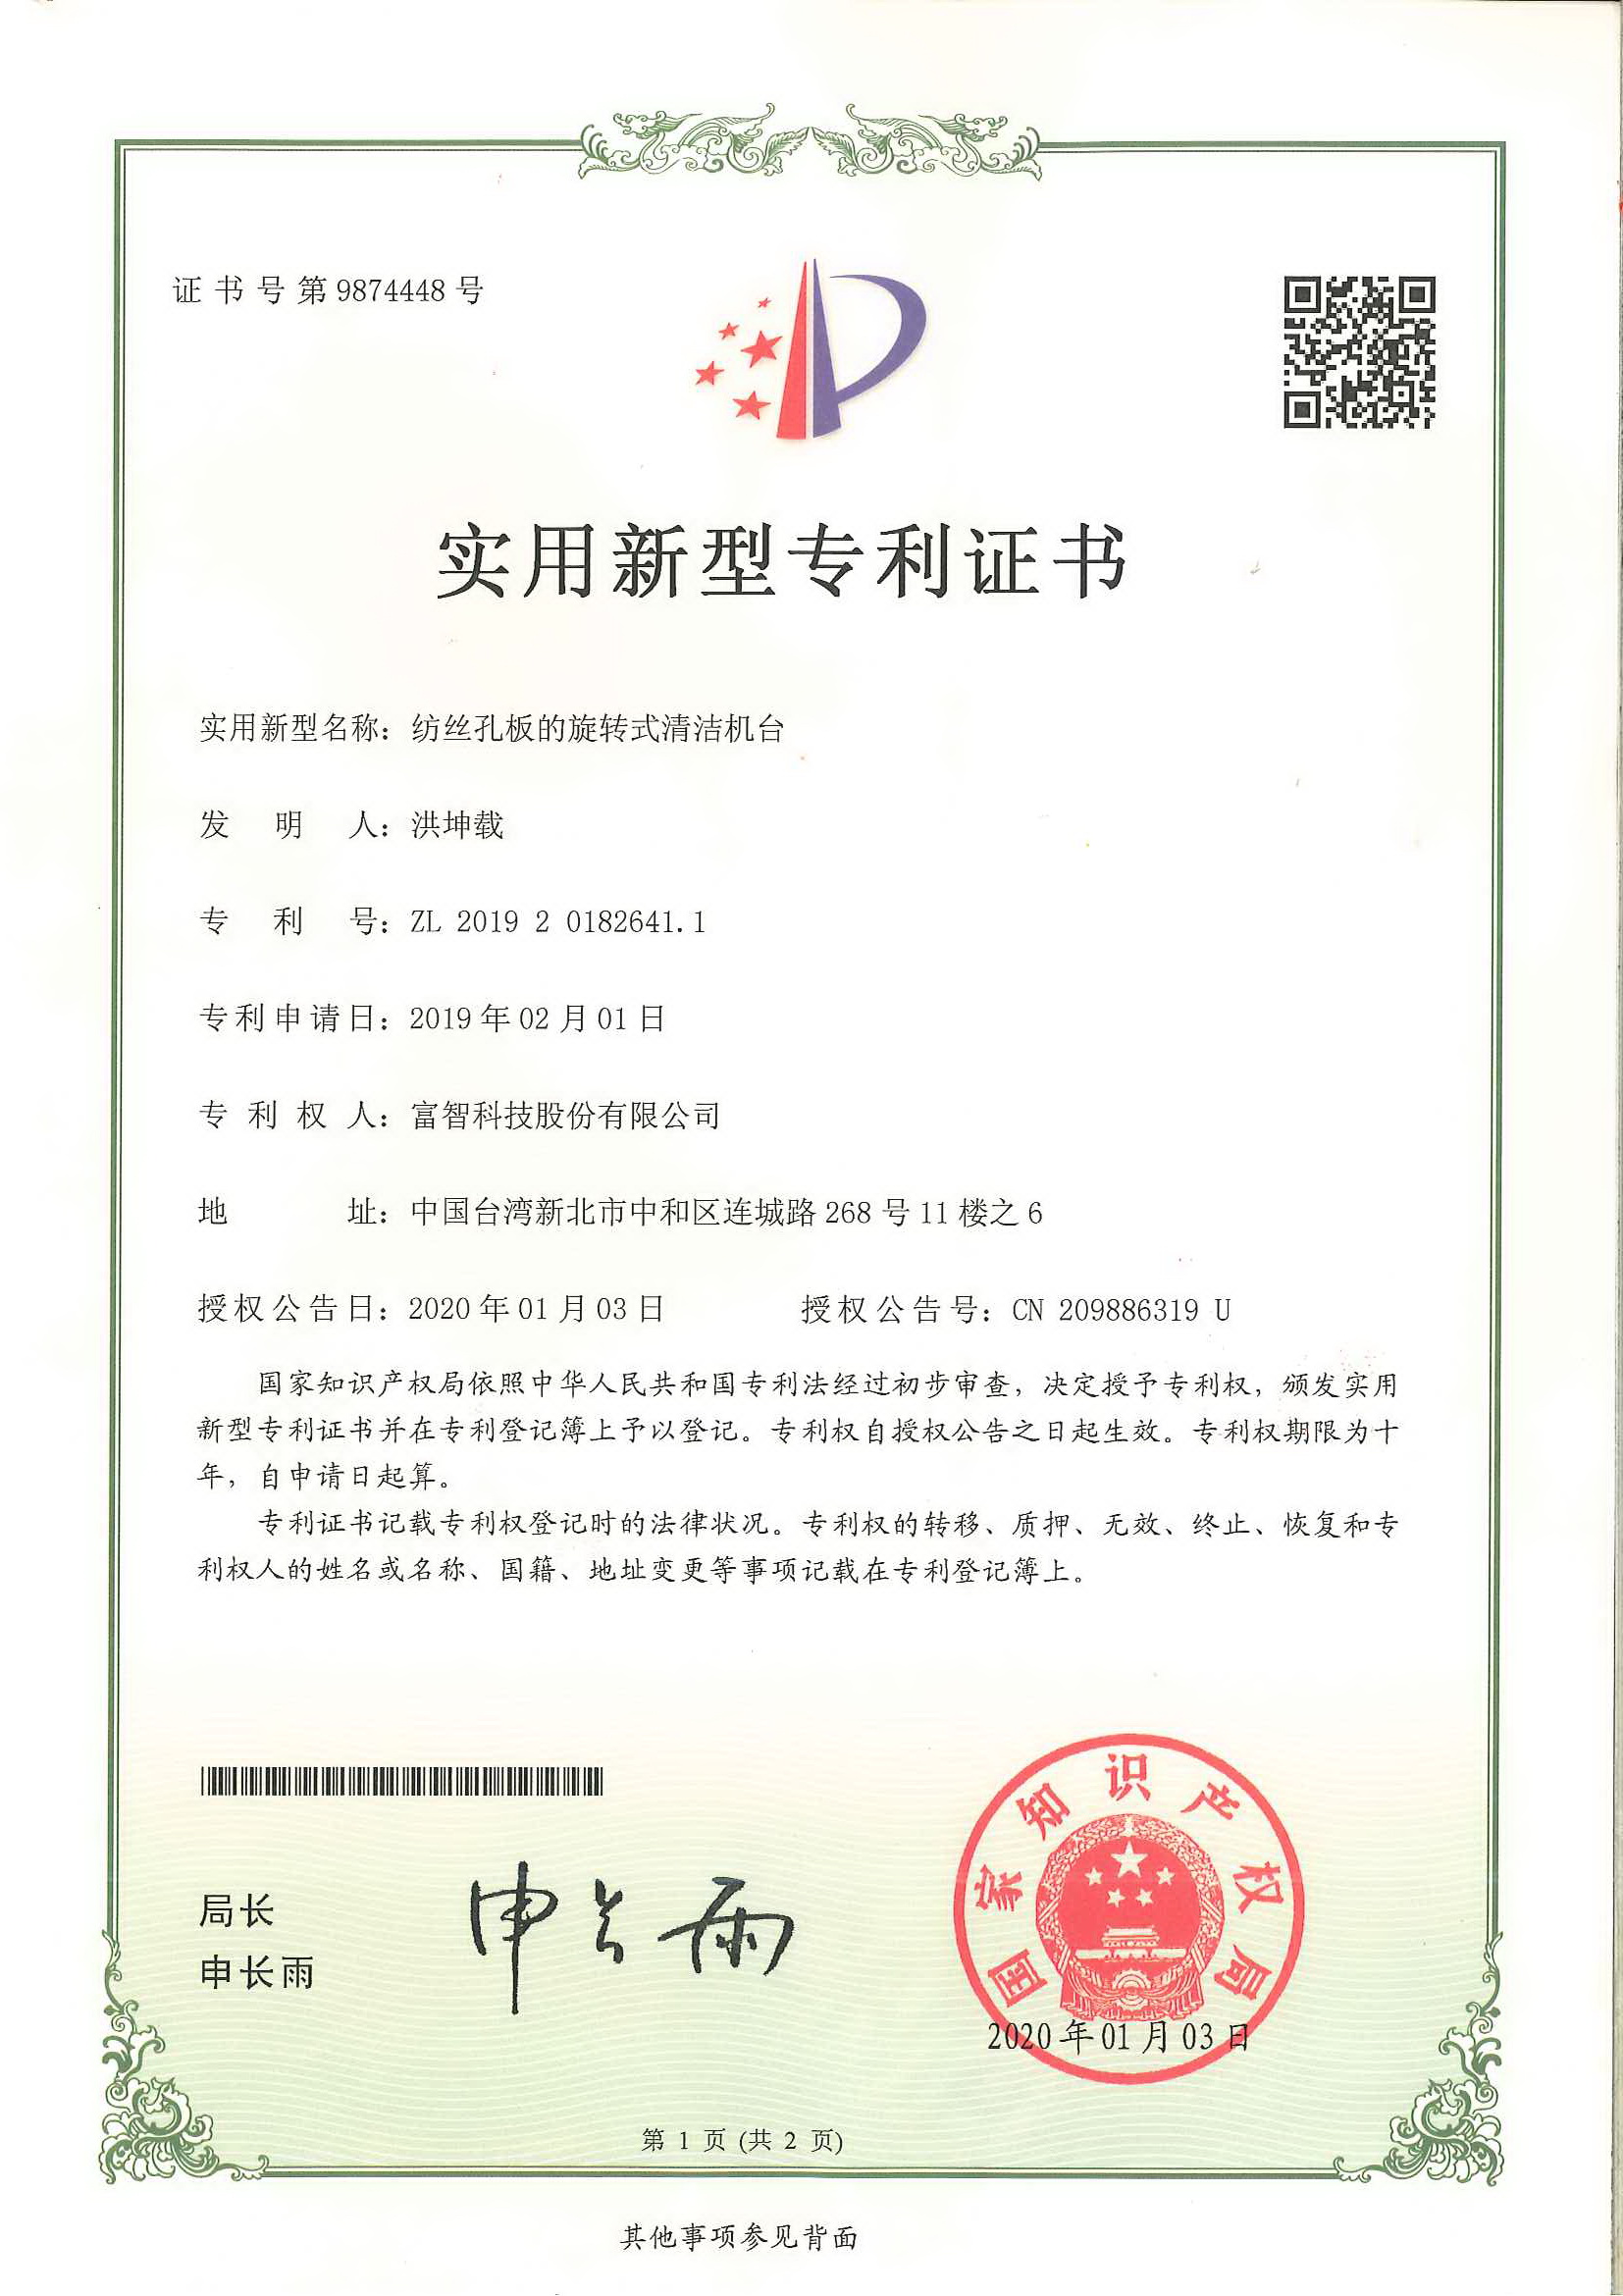 此為中華人民共和國的實用新型專利證書，申請專利核准通過